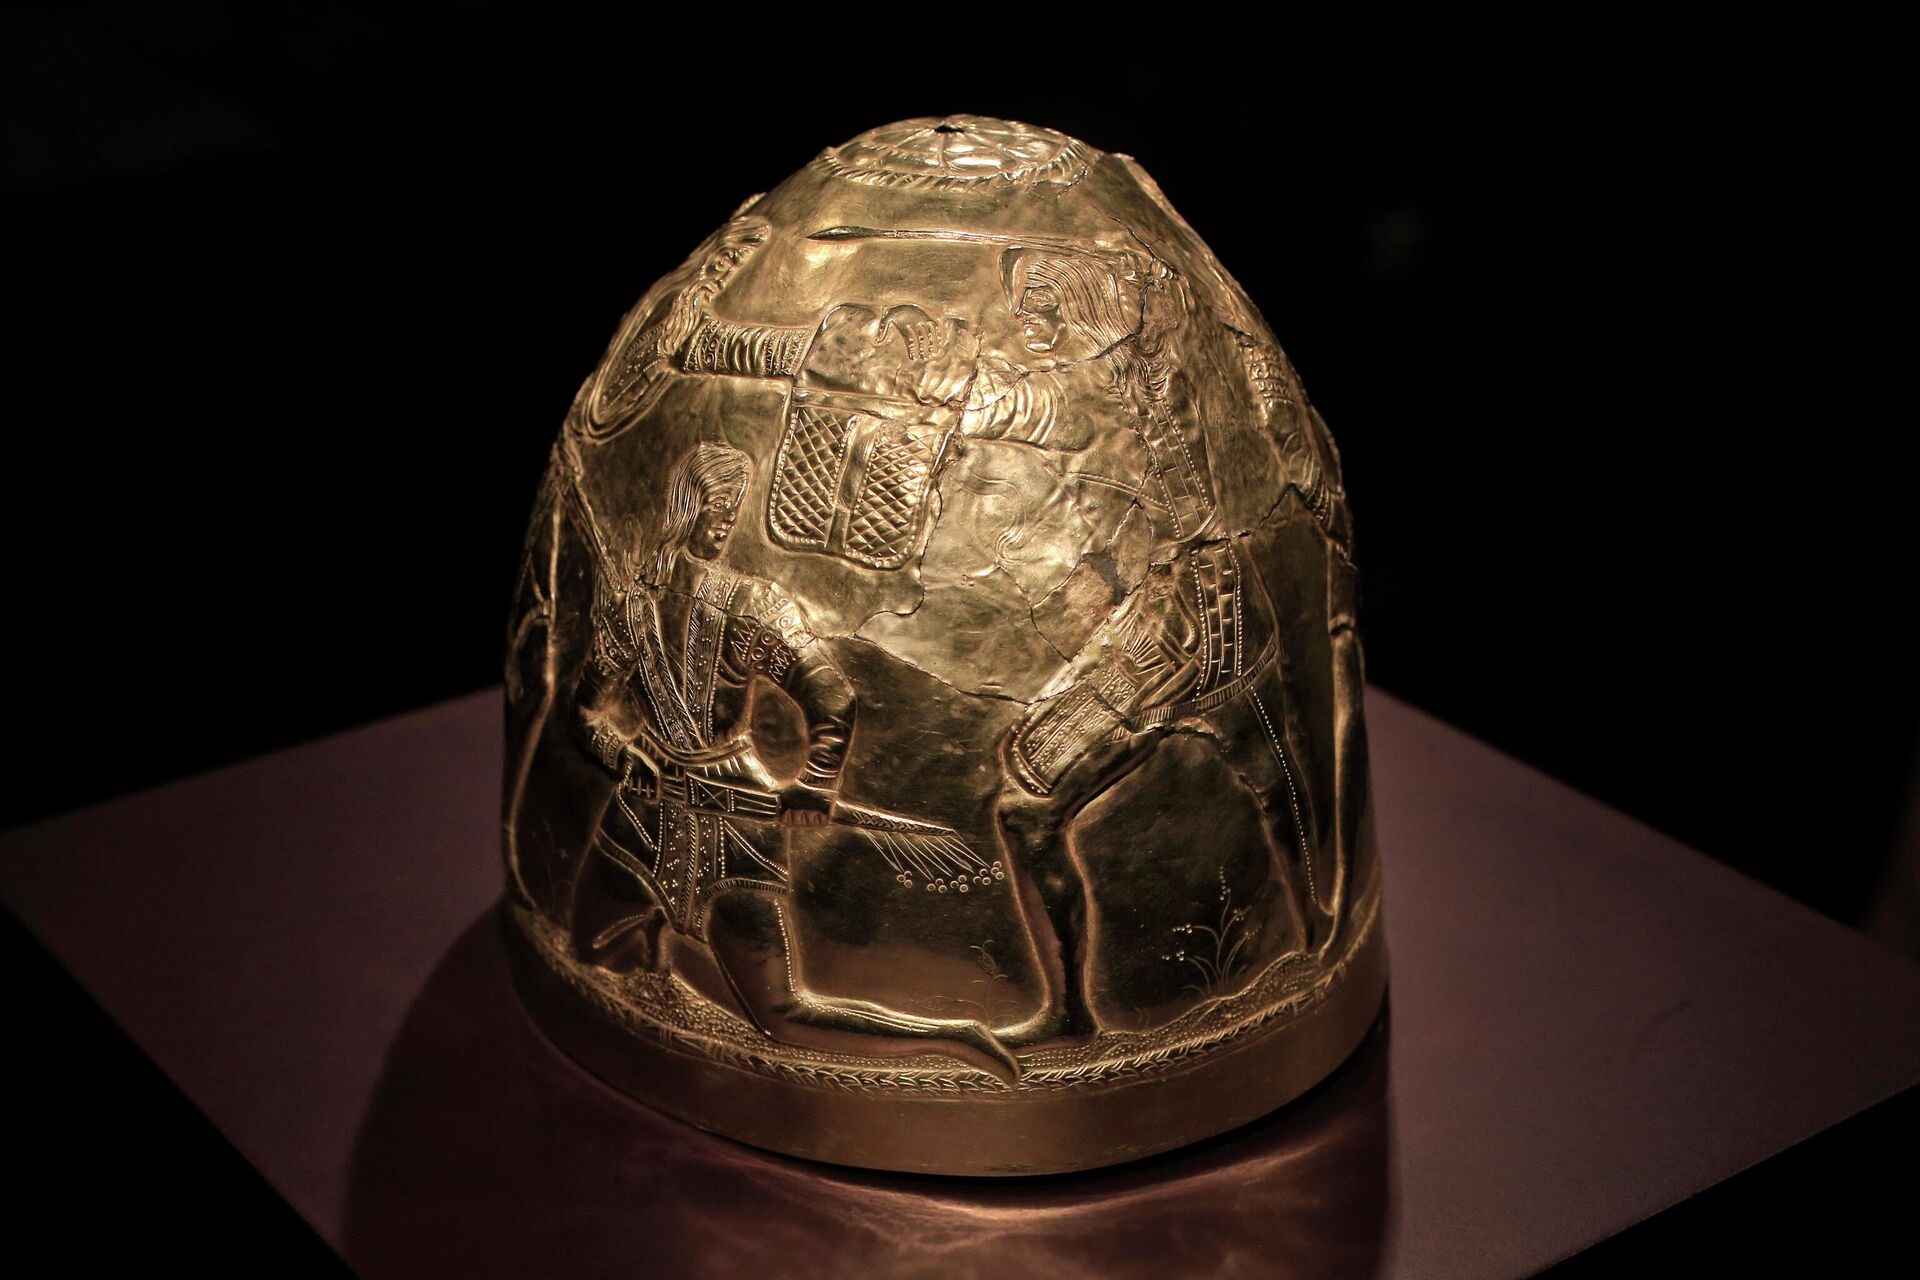 Cкифский золотой шлем в историческом музее Алларда Пирсона в Амстердаме - Sputnik Lietuva, 1920, 27.10.2021